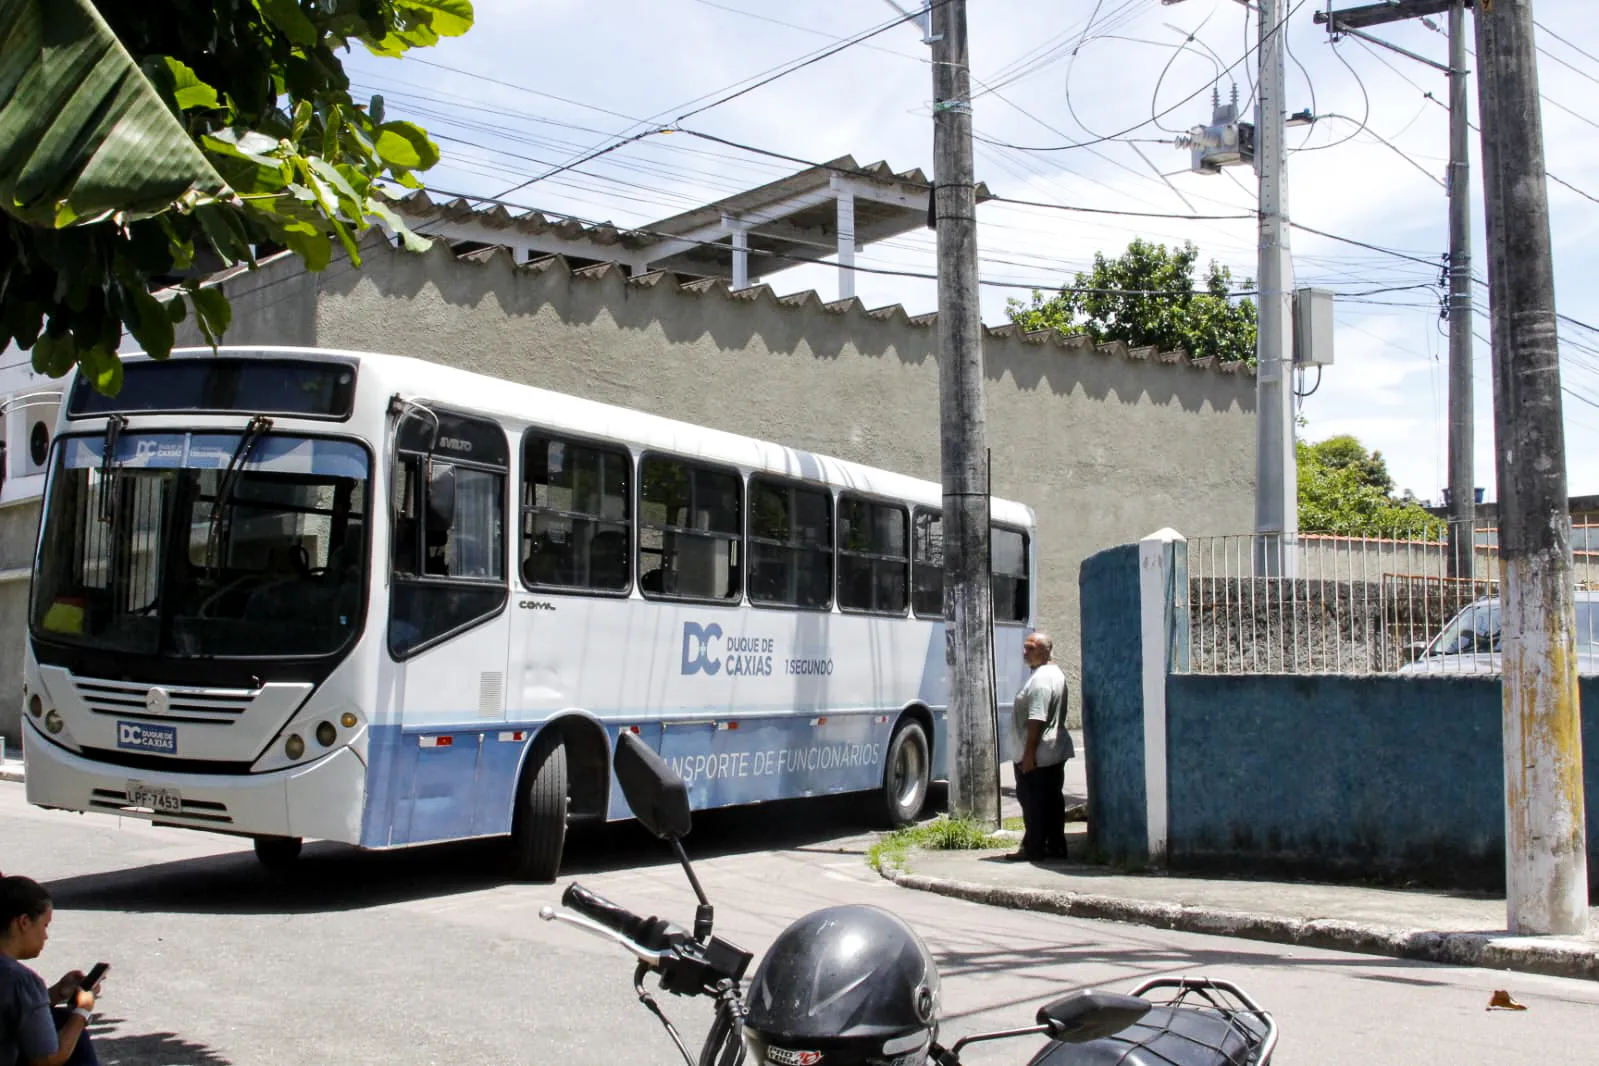 Familiares alugaram um ônibus para levar as pessoas ao enterro de Diogo